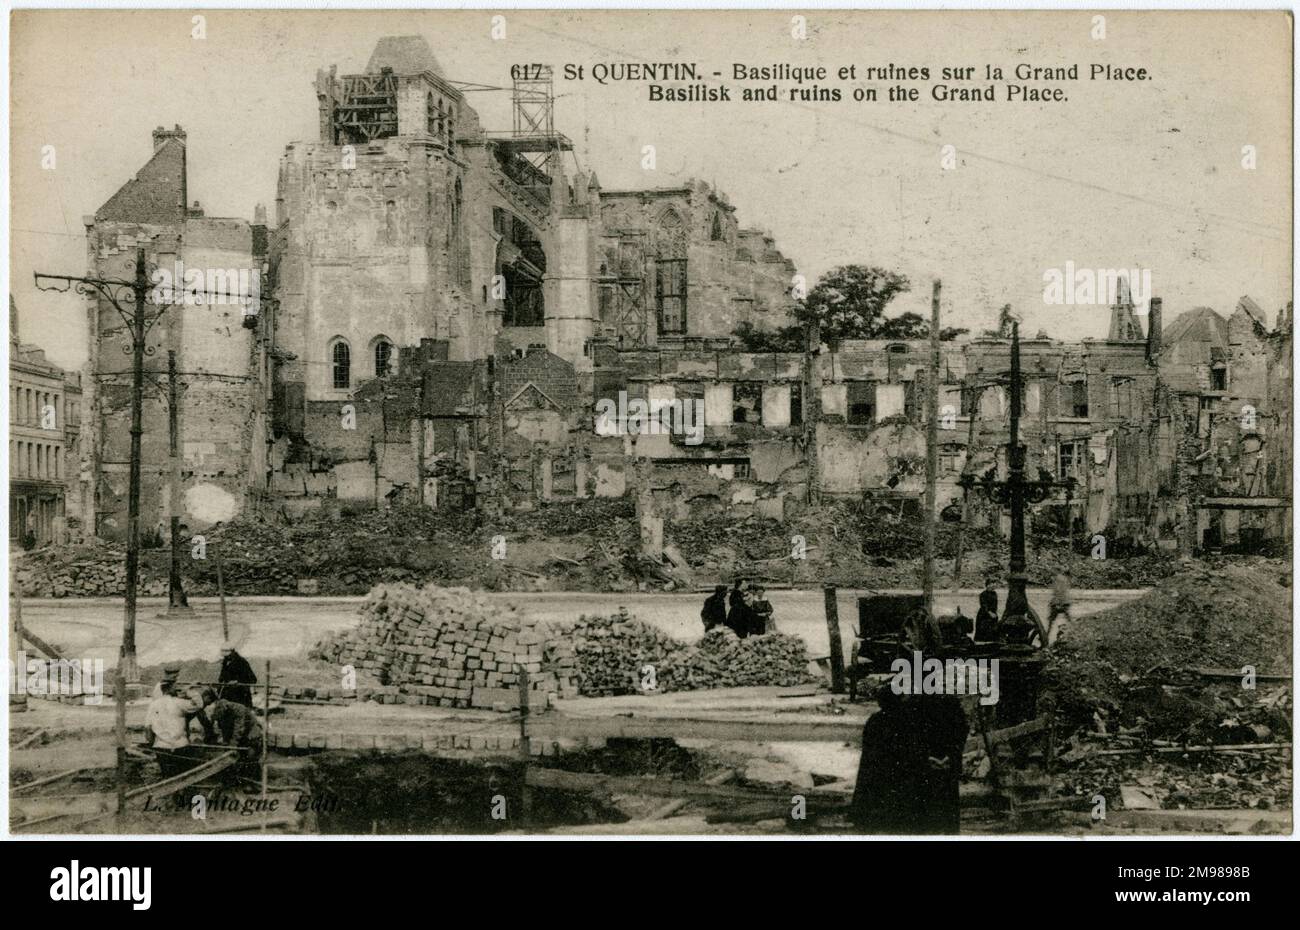 Saint Quentin, Frankreich - Kathedrale und Basilika nach dem Bombenanschlag, WW1. Stockfoto